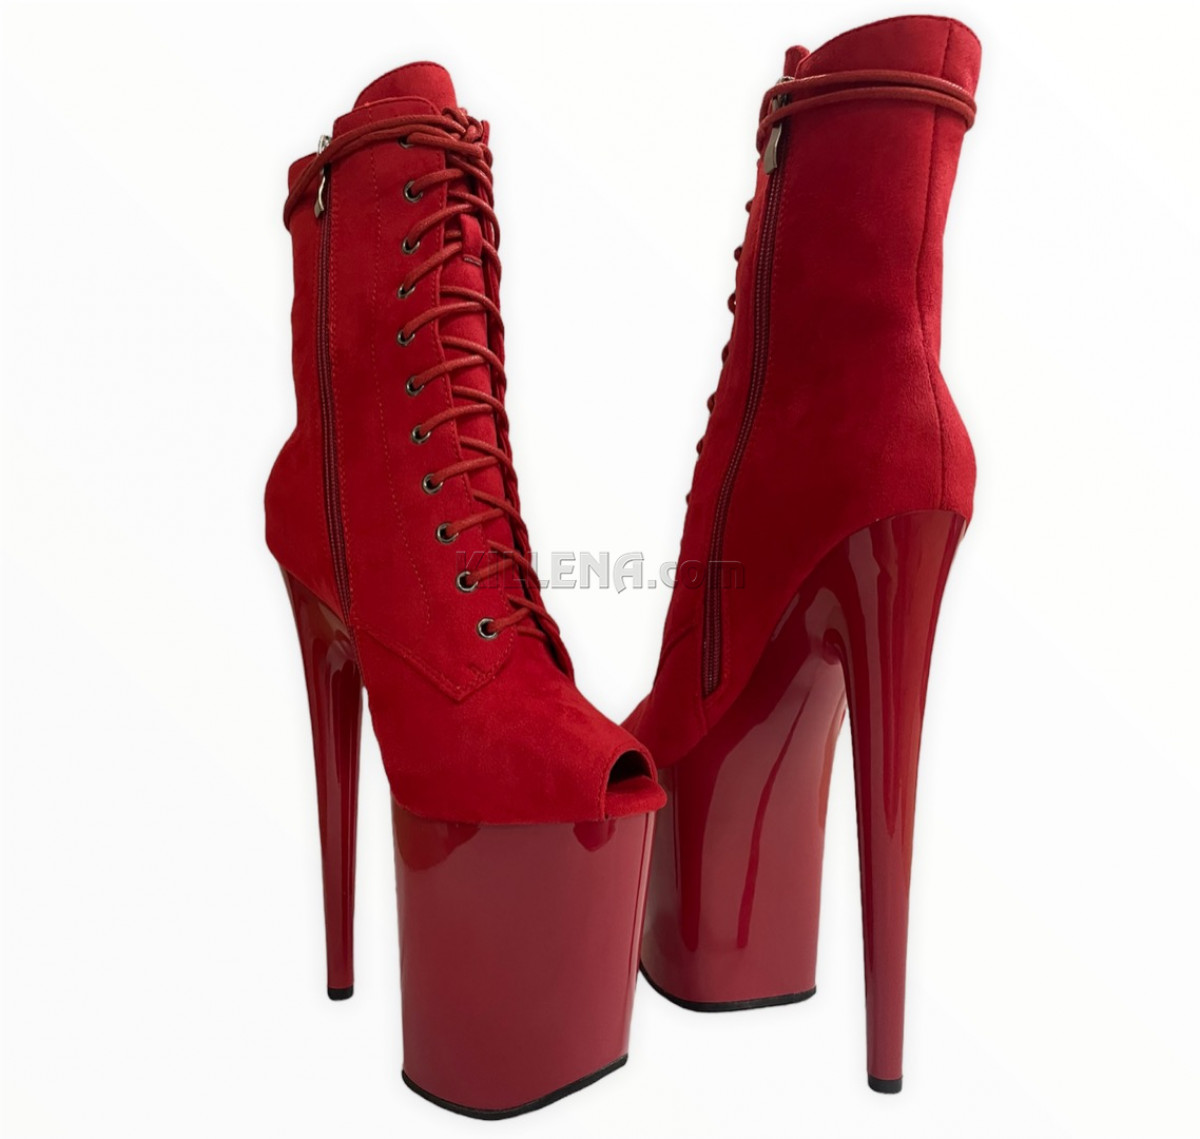 Красные ботиночки для exotic из эко замши  с узким вырезом под пальцы